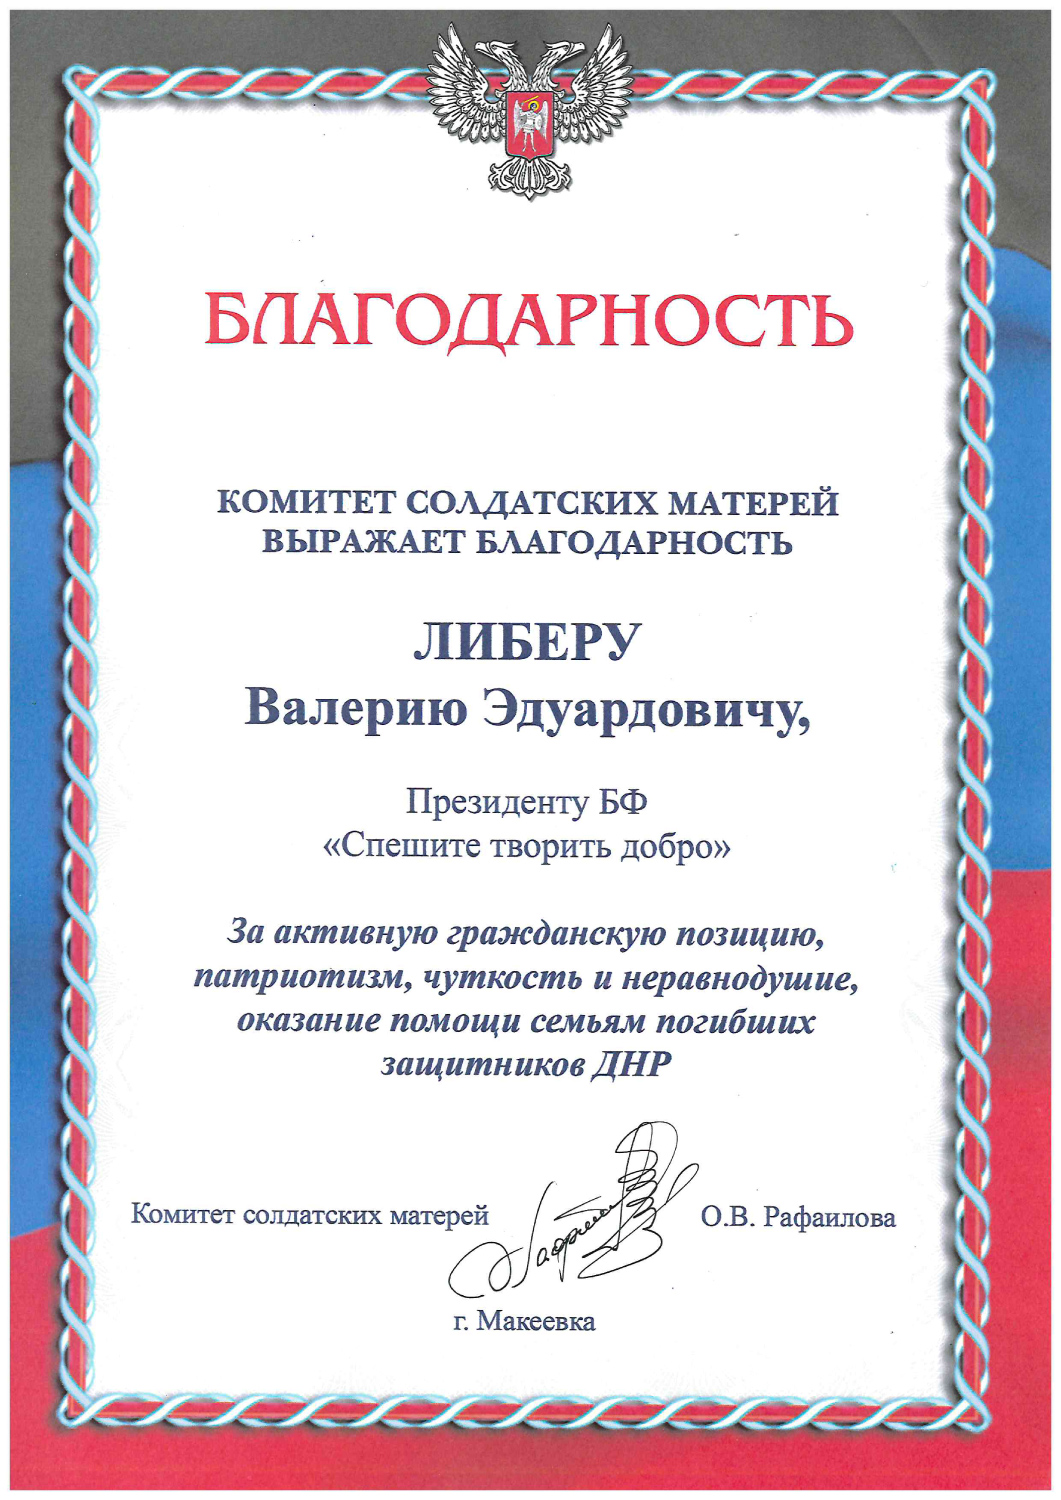 Благодарность от Комитета солдатских матерей г.Макеевки